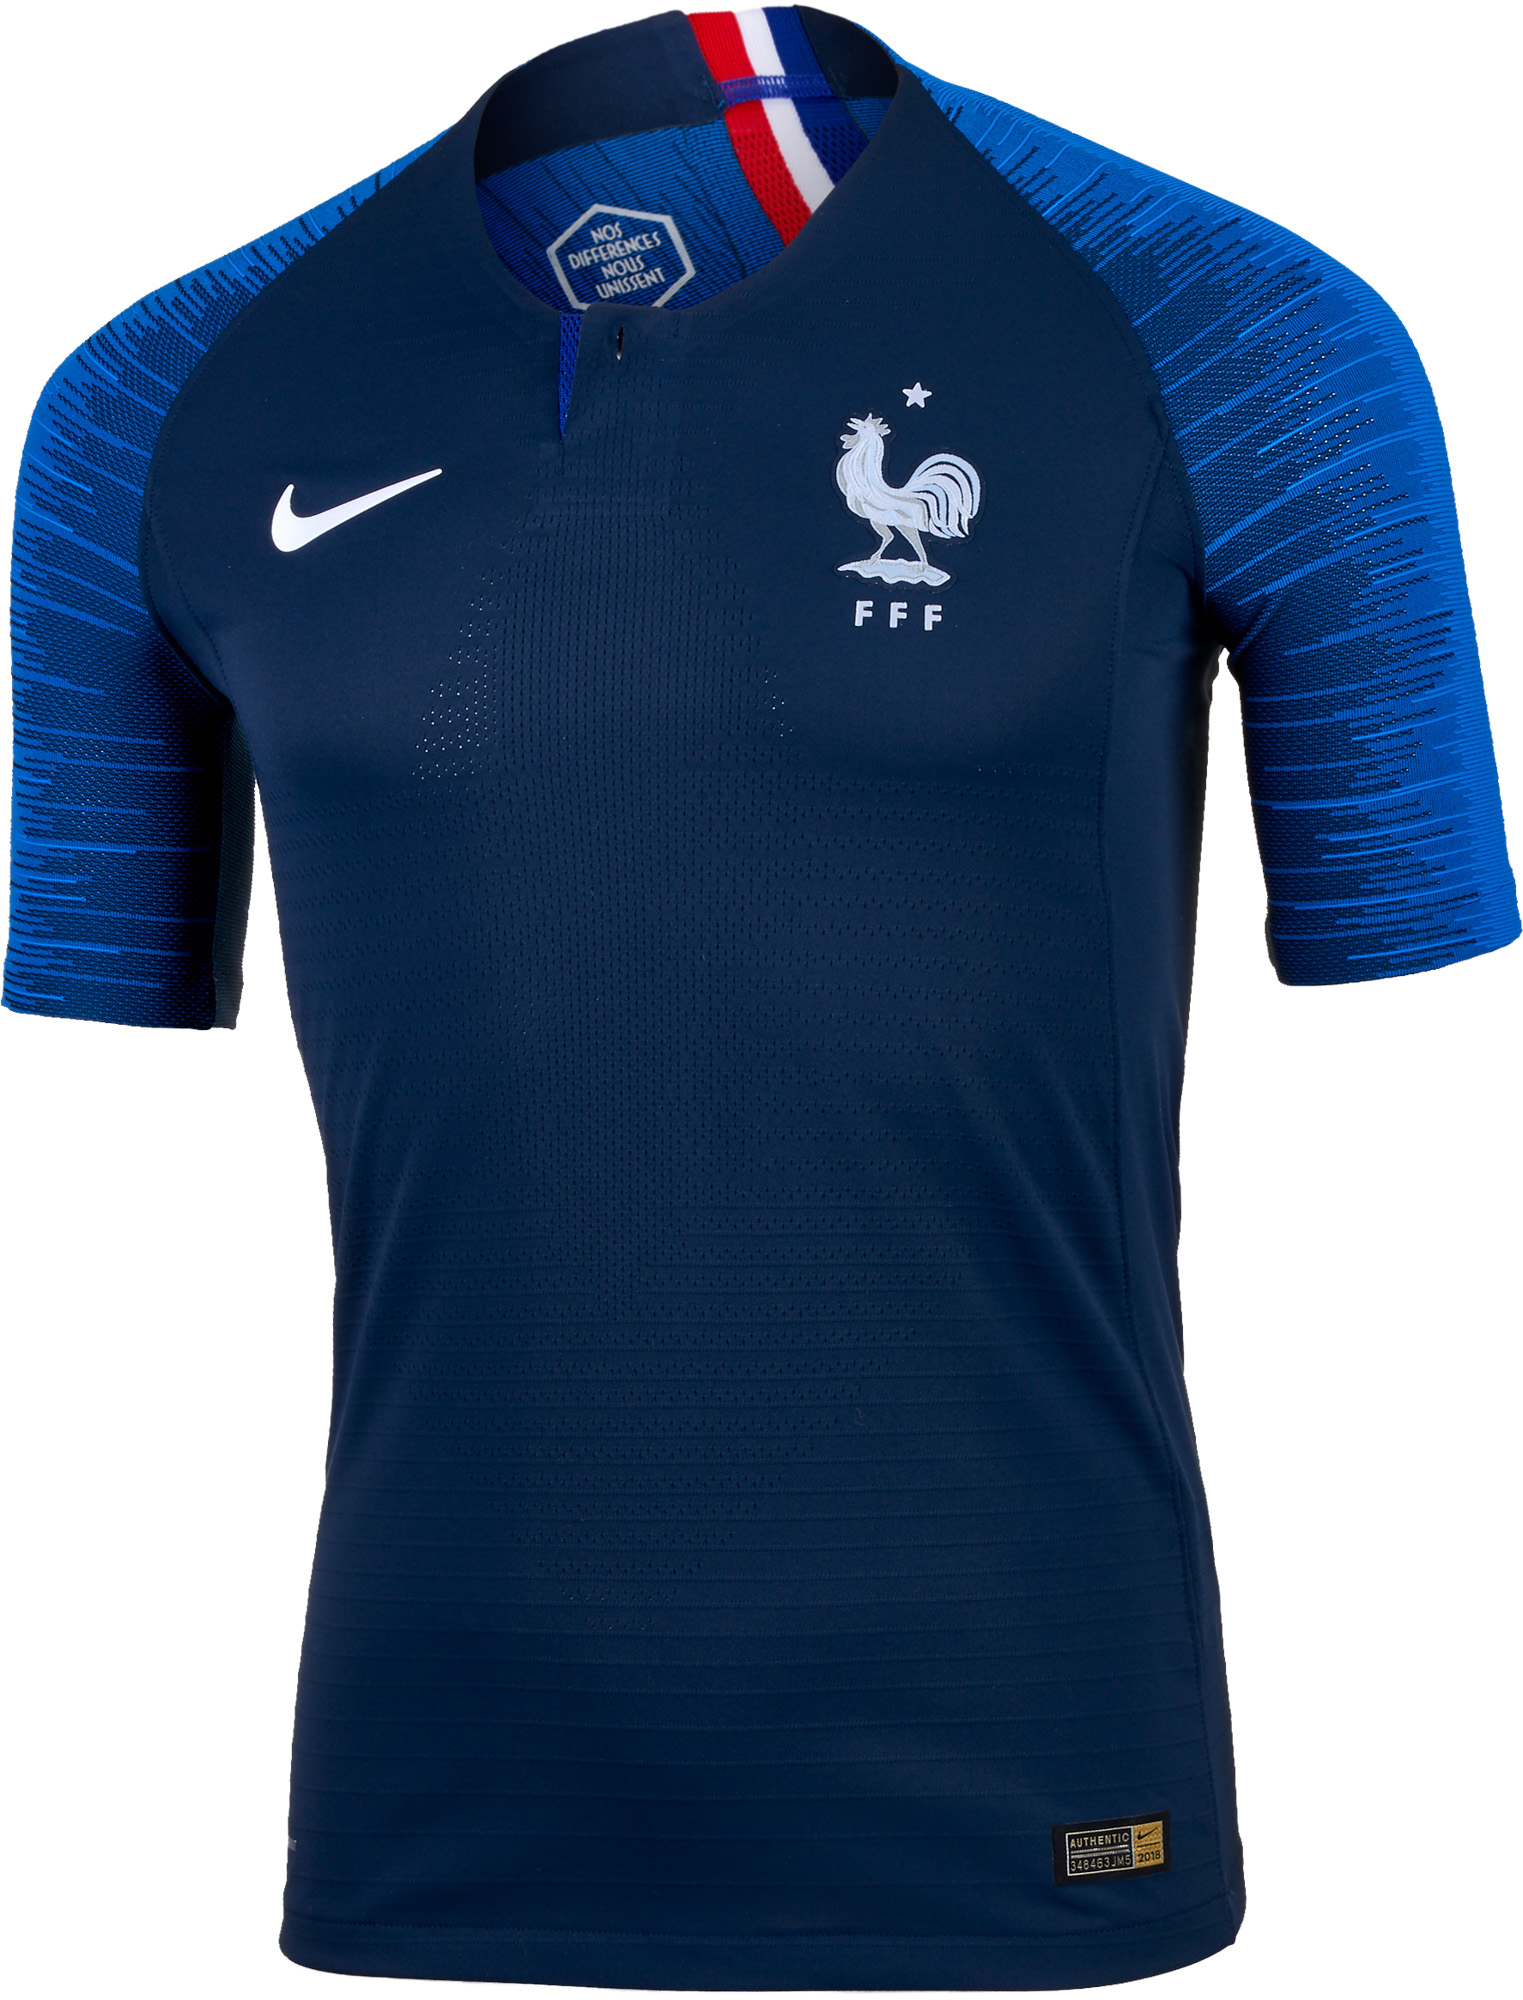 2018/19 Nike France Home Match Jersey SoccerPro